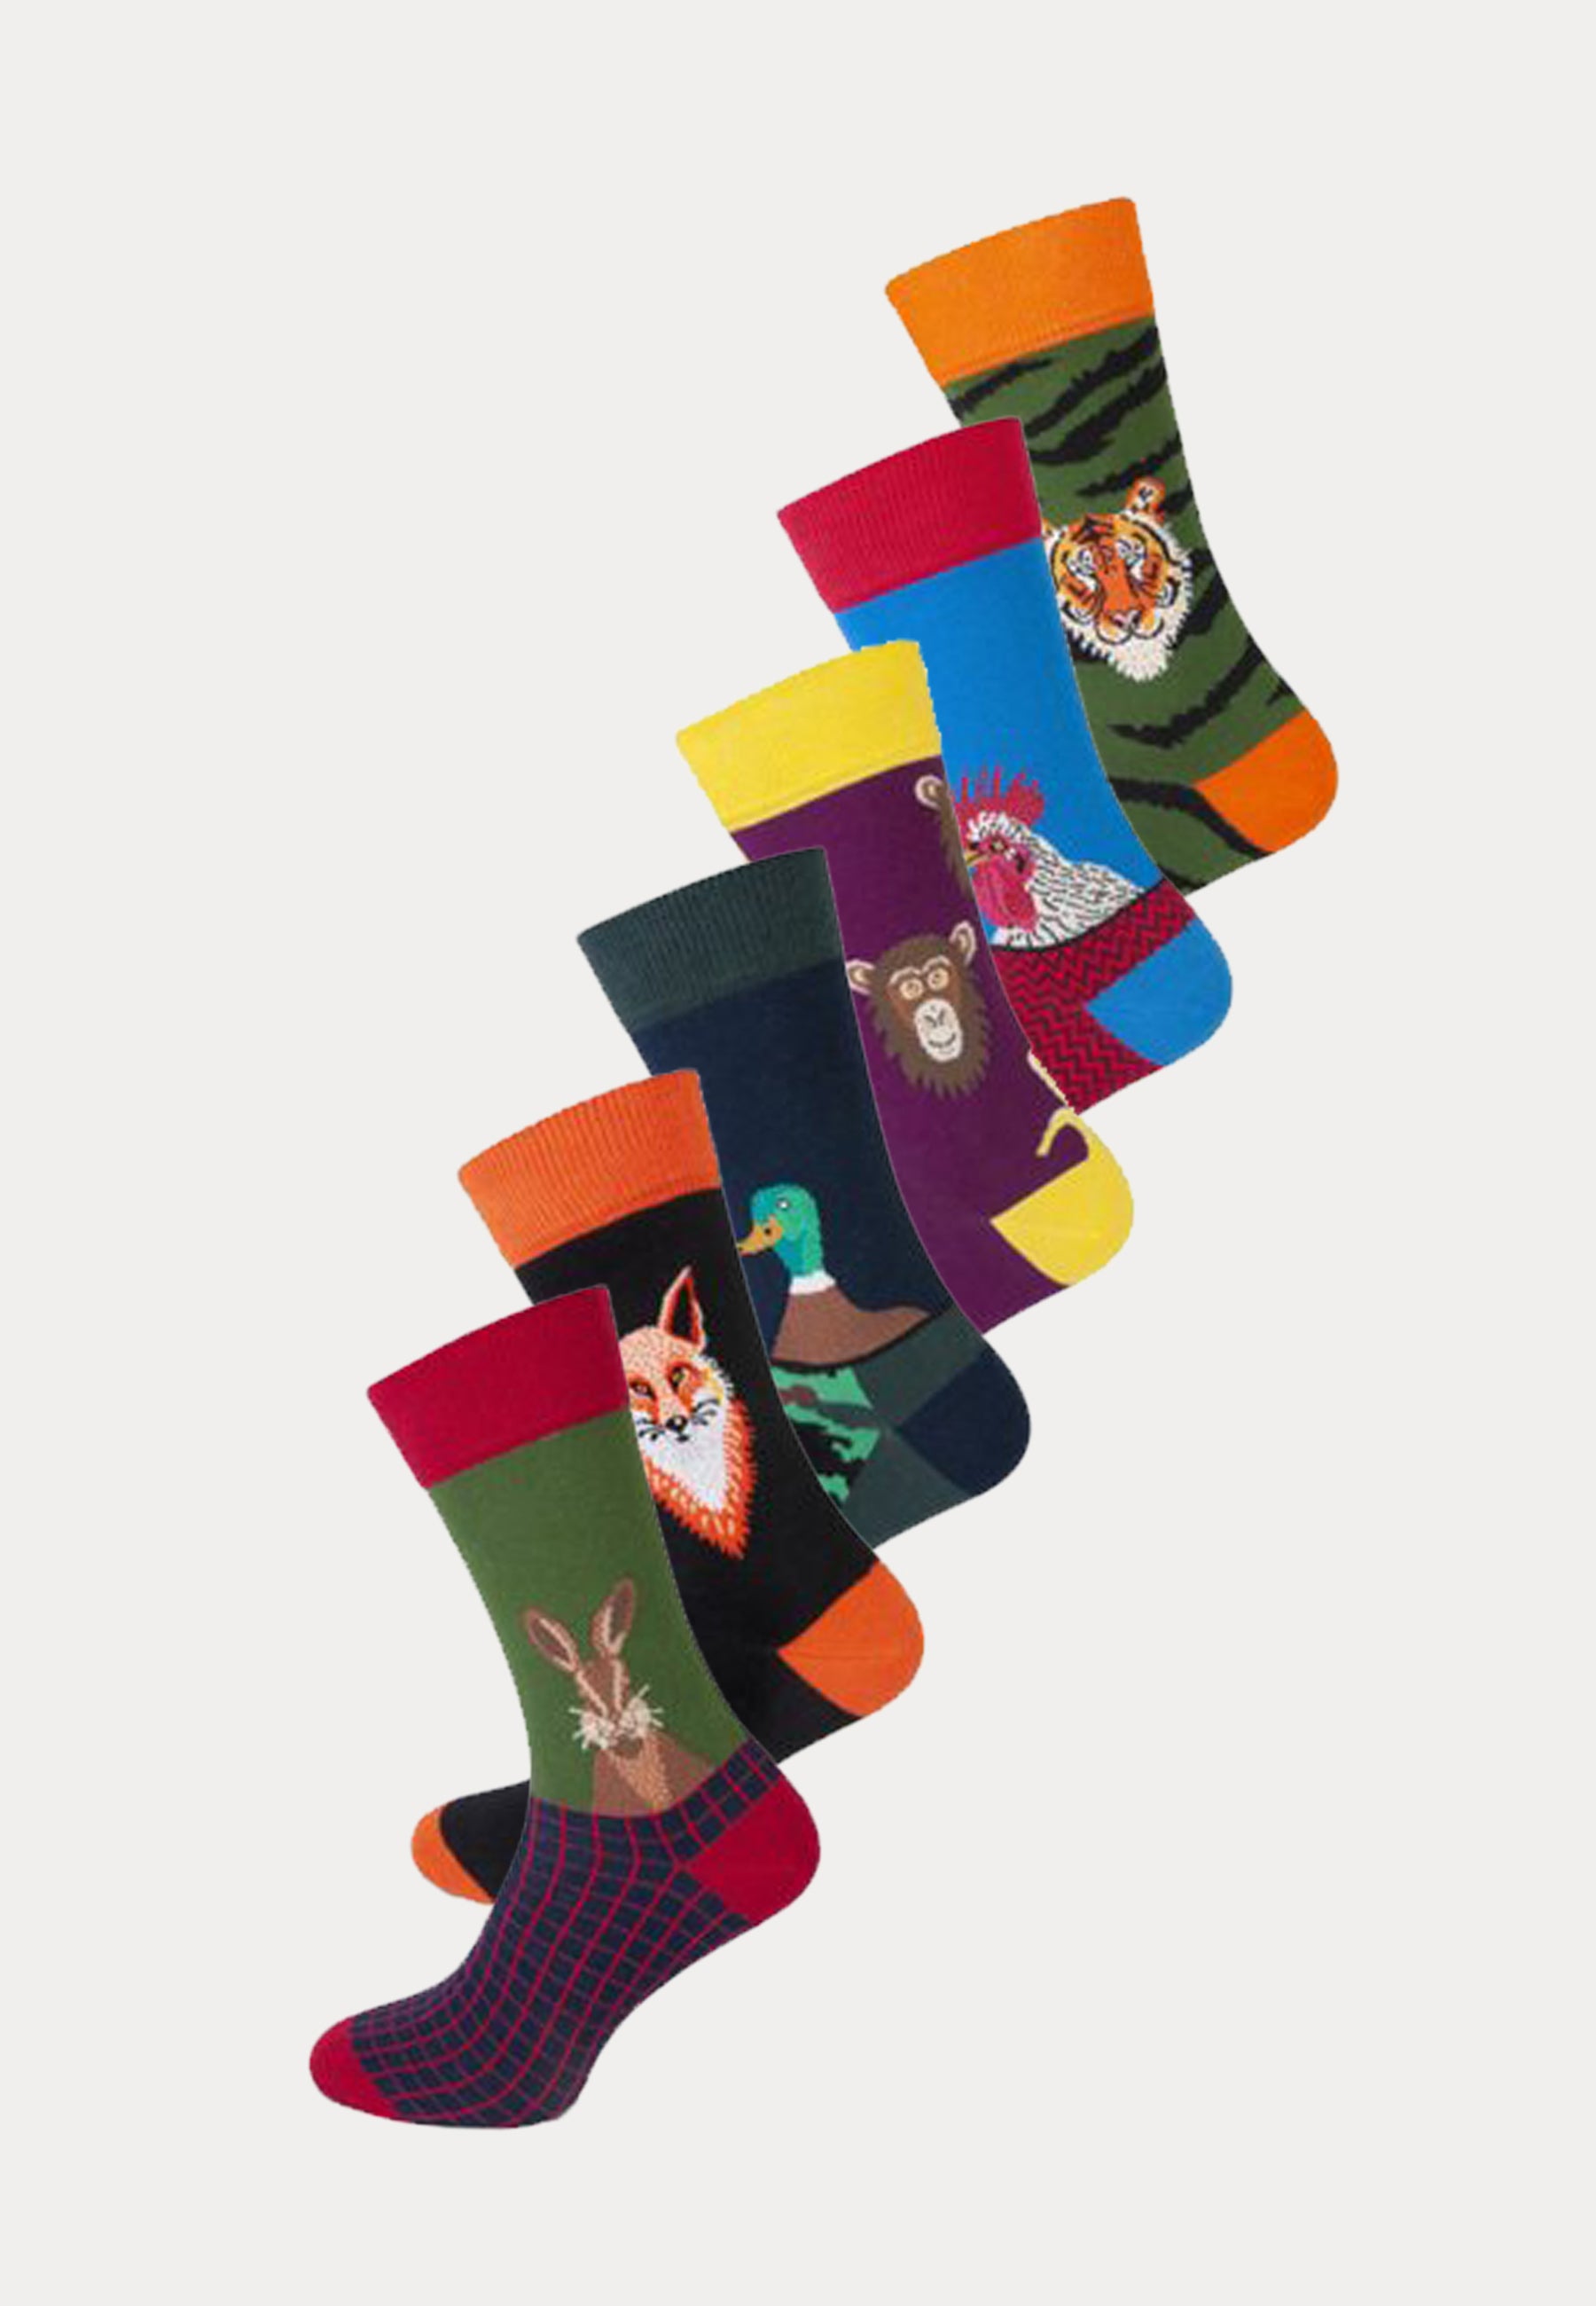 6 paar fashion socks met print van dieren van het merk Teckel